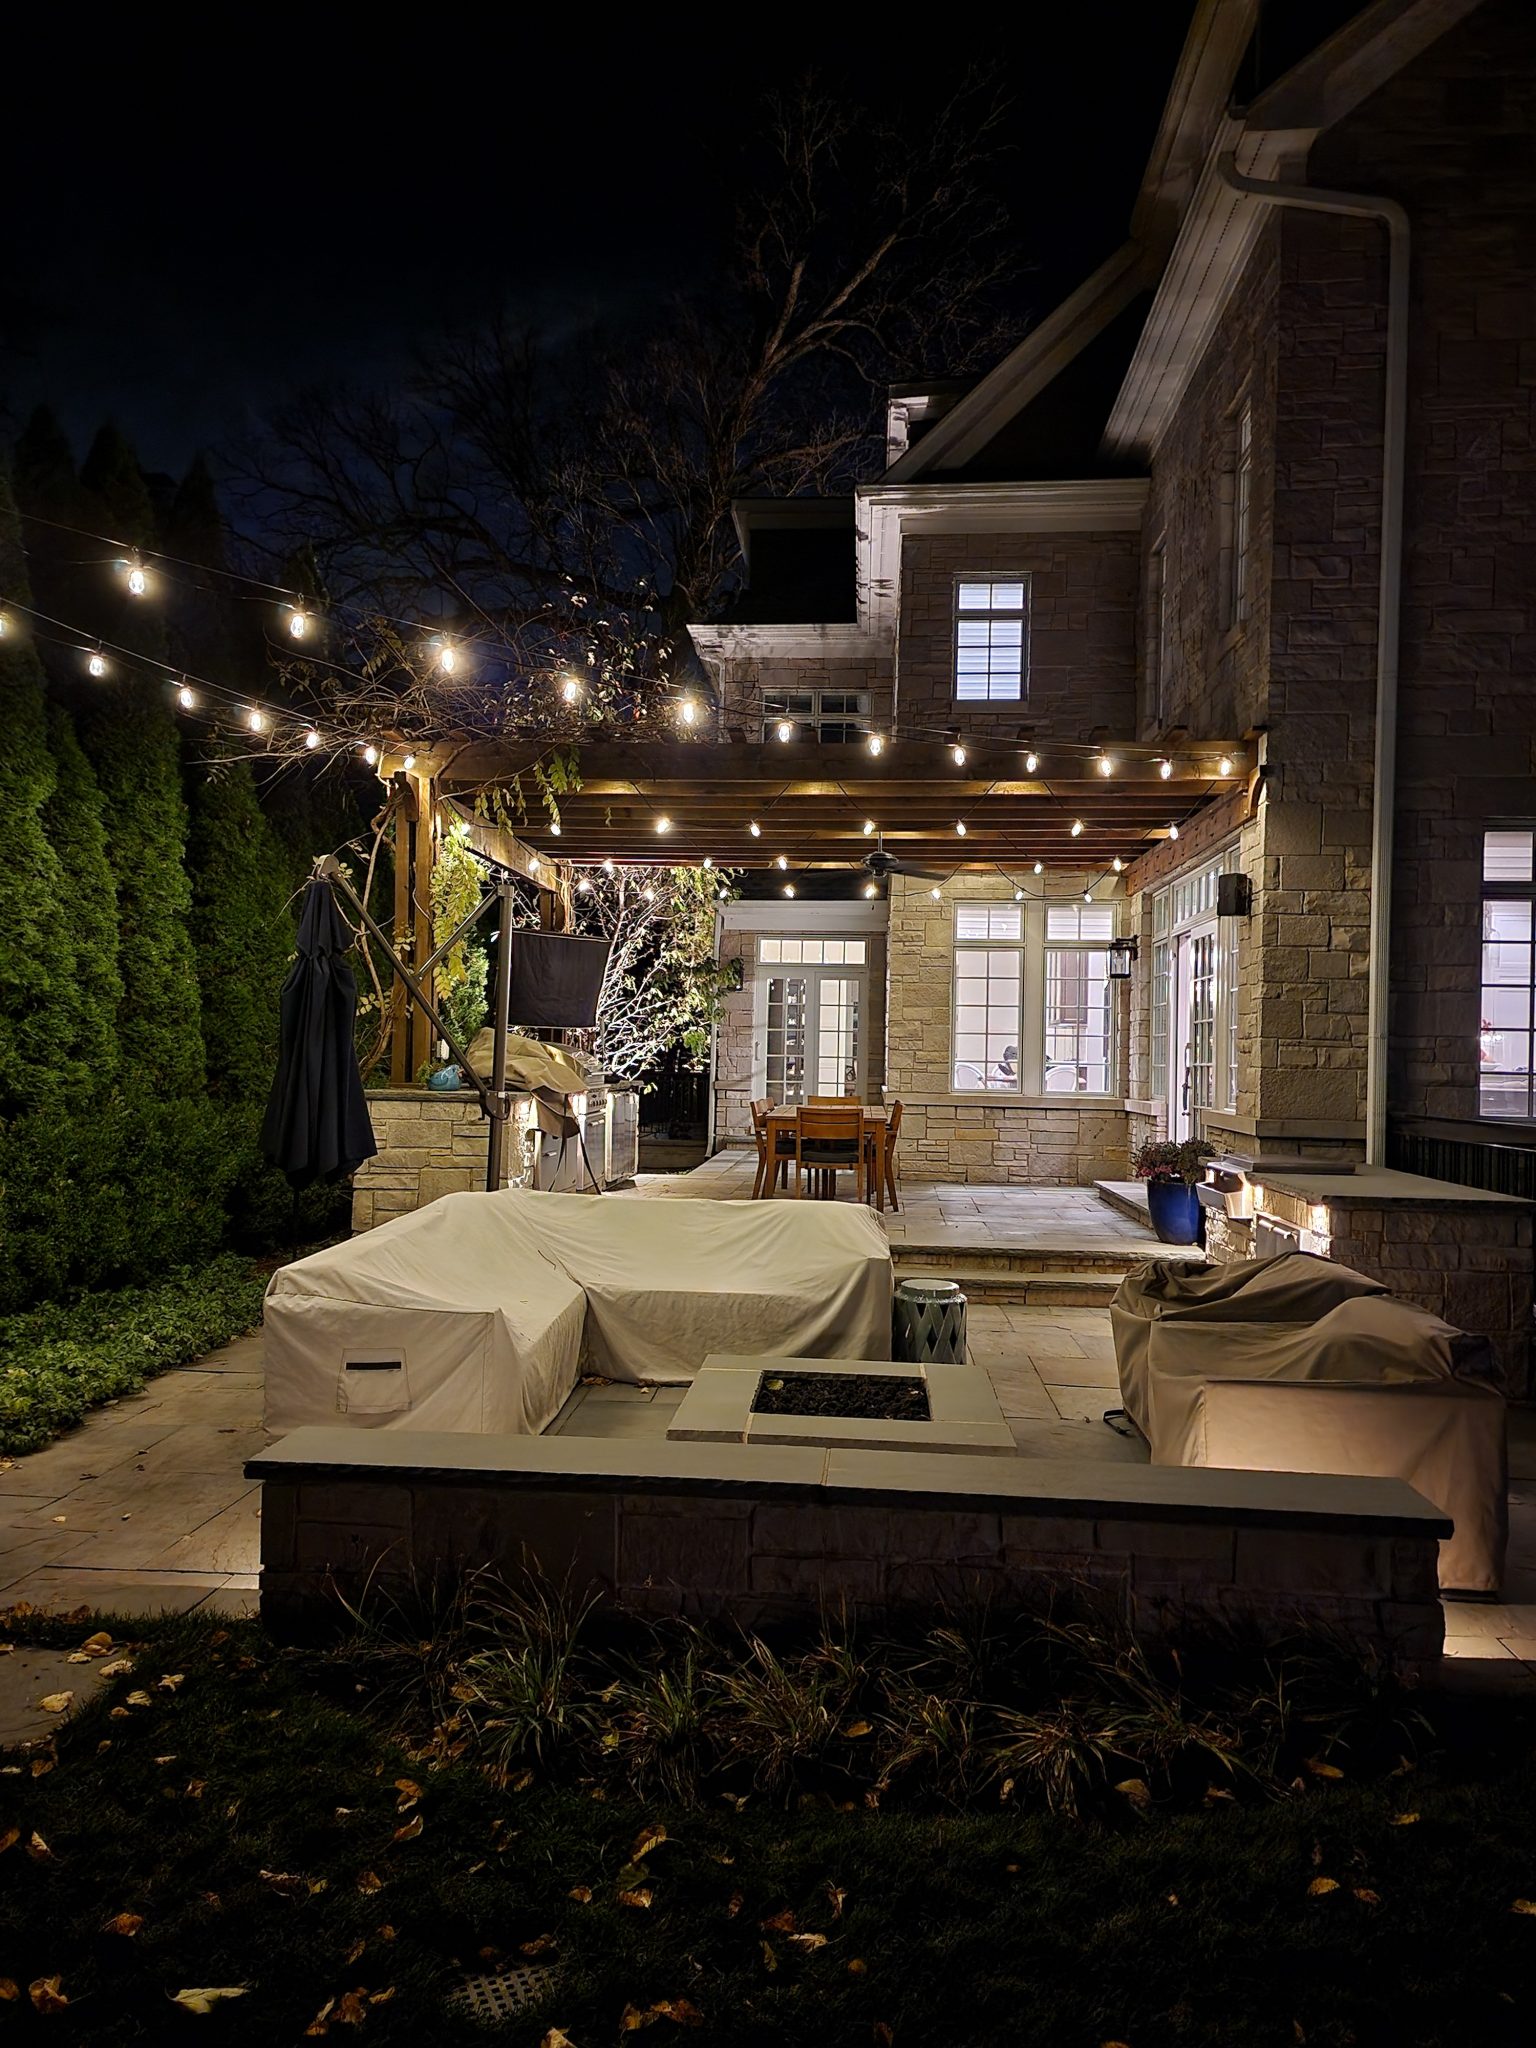 hire an outdoor lighting designer, outdoor landscape lighting expert